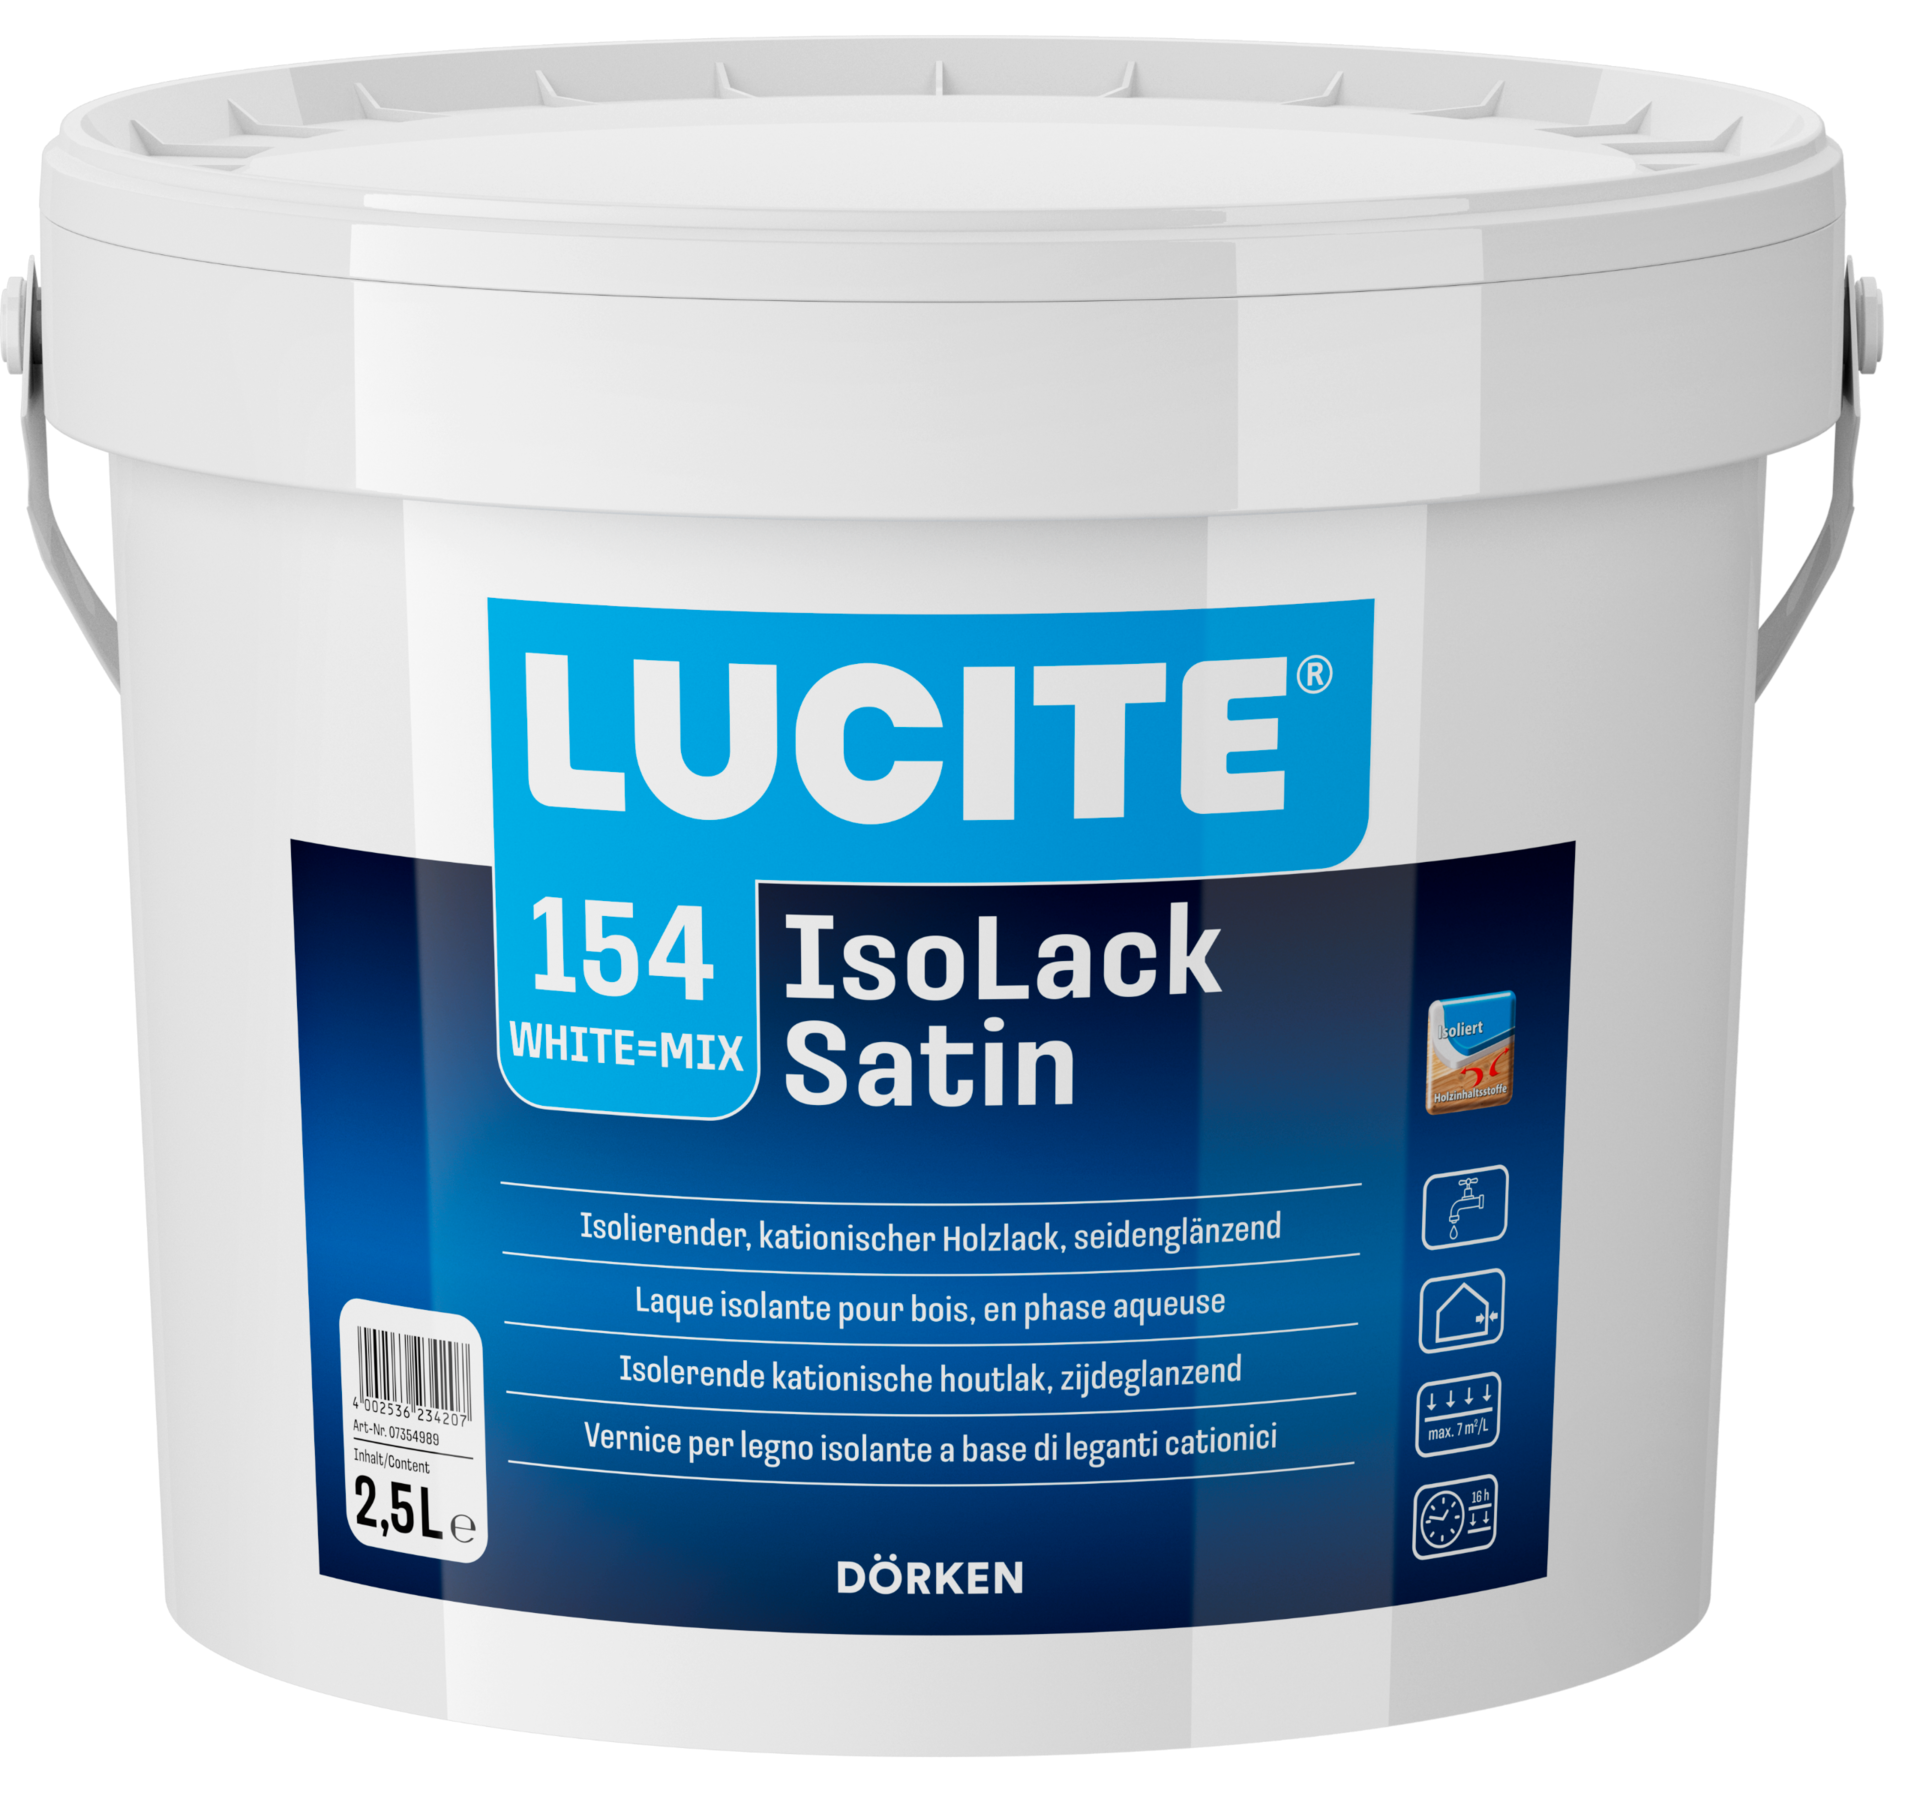 LUCITE®  154 IsoLack Satin